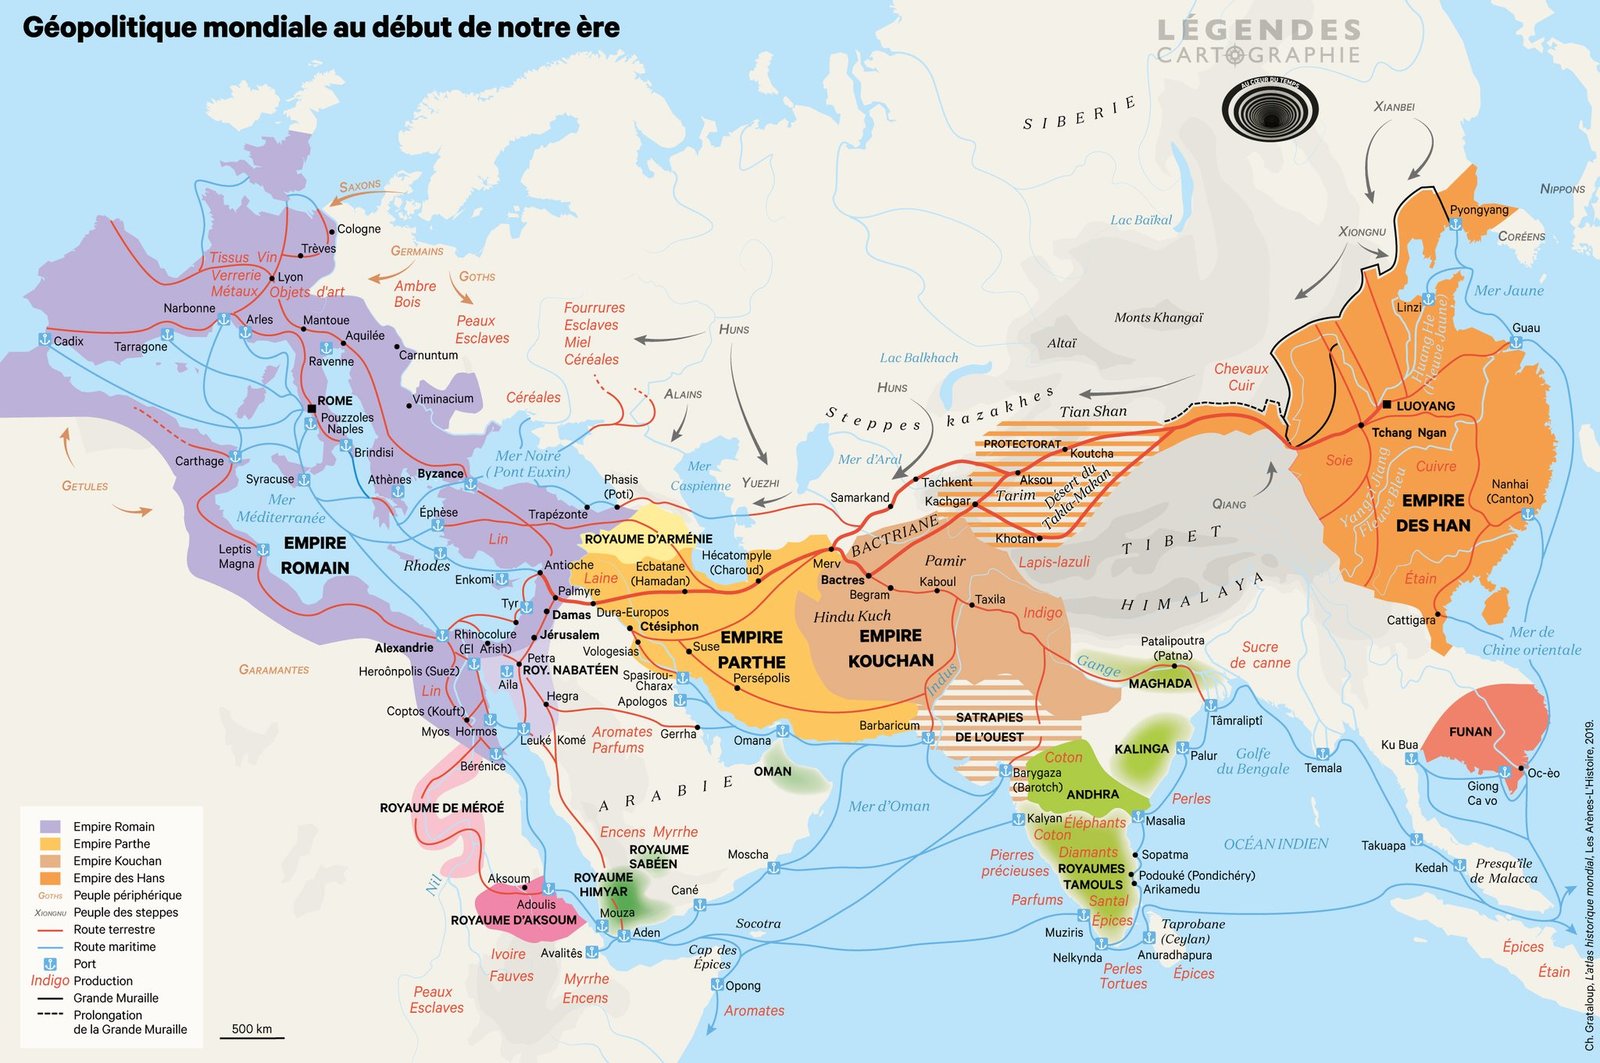 Empire romain, Empire parthe, Empire Han, géopolitique au début du 1er millénaire. 1er-3ème siècle